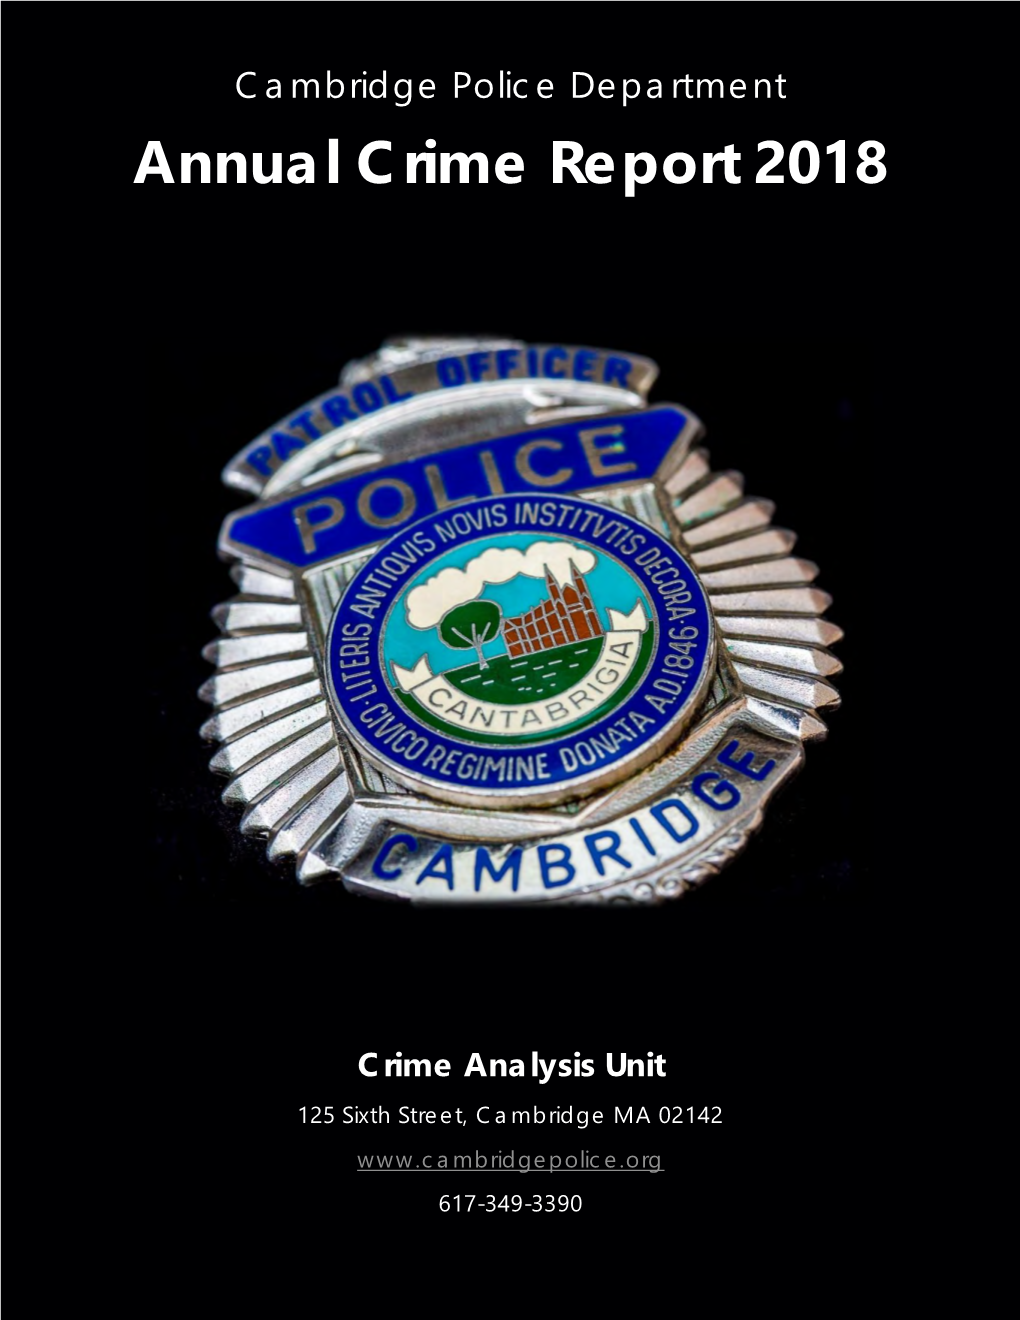 Annual Crime Report 2018